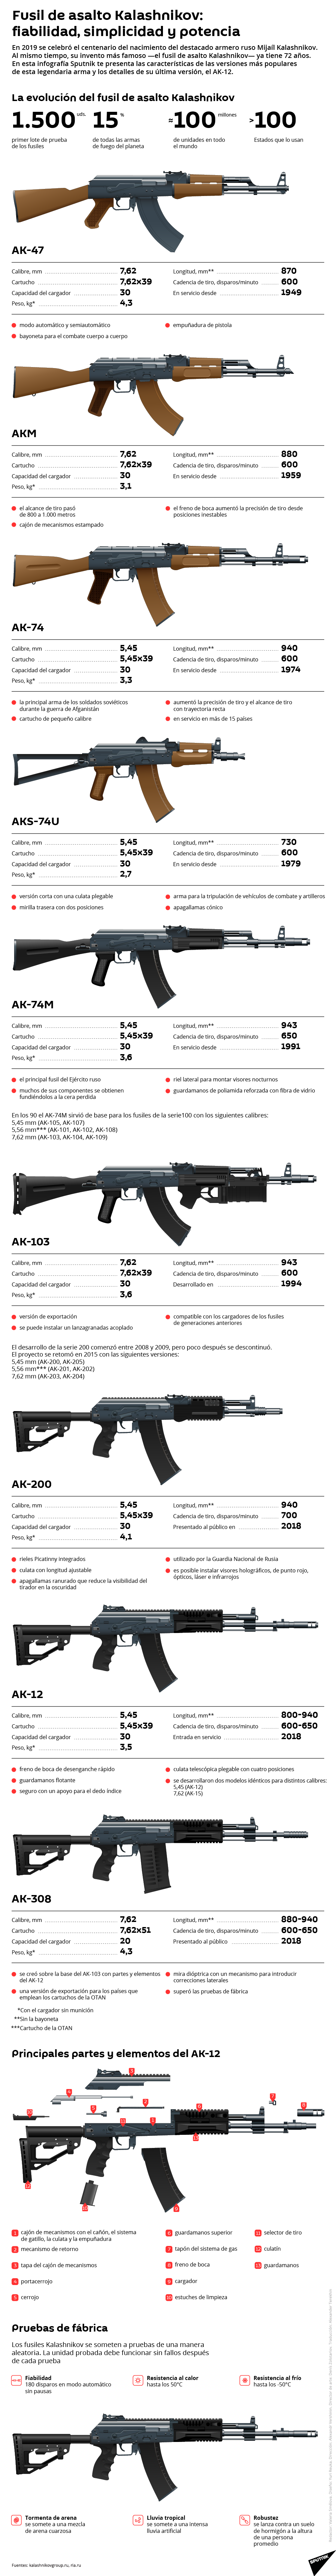 Del AK-47 al AK-12: la evolución de los legendarios fusiles Kalashnikov - Sputnik Mundo